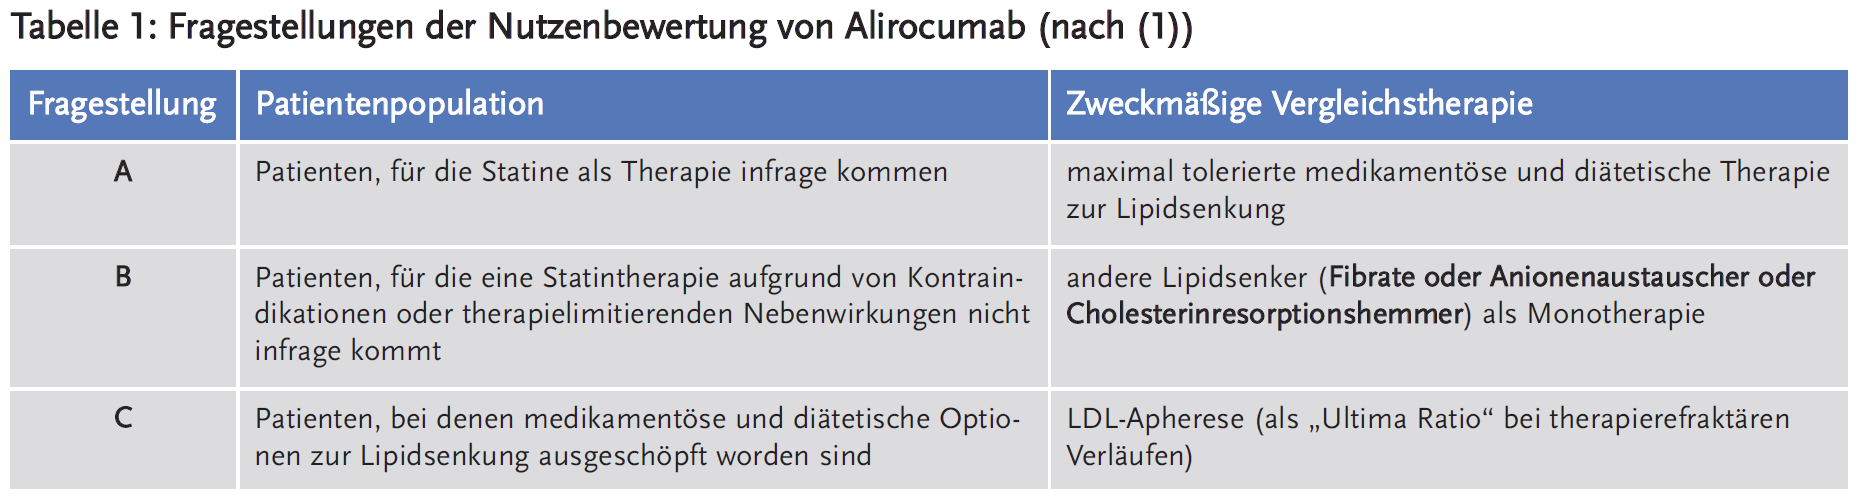 Tabelle 1: Fragestellungen der Nutzenbewertung von Alirocumab (nach (1))